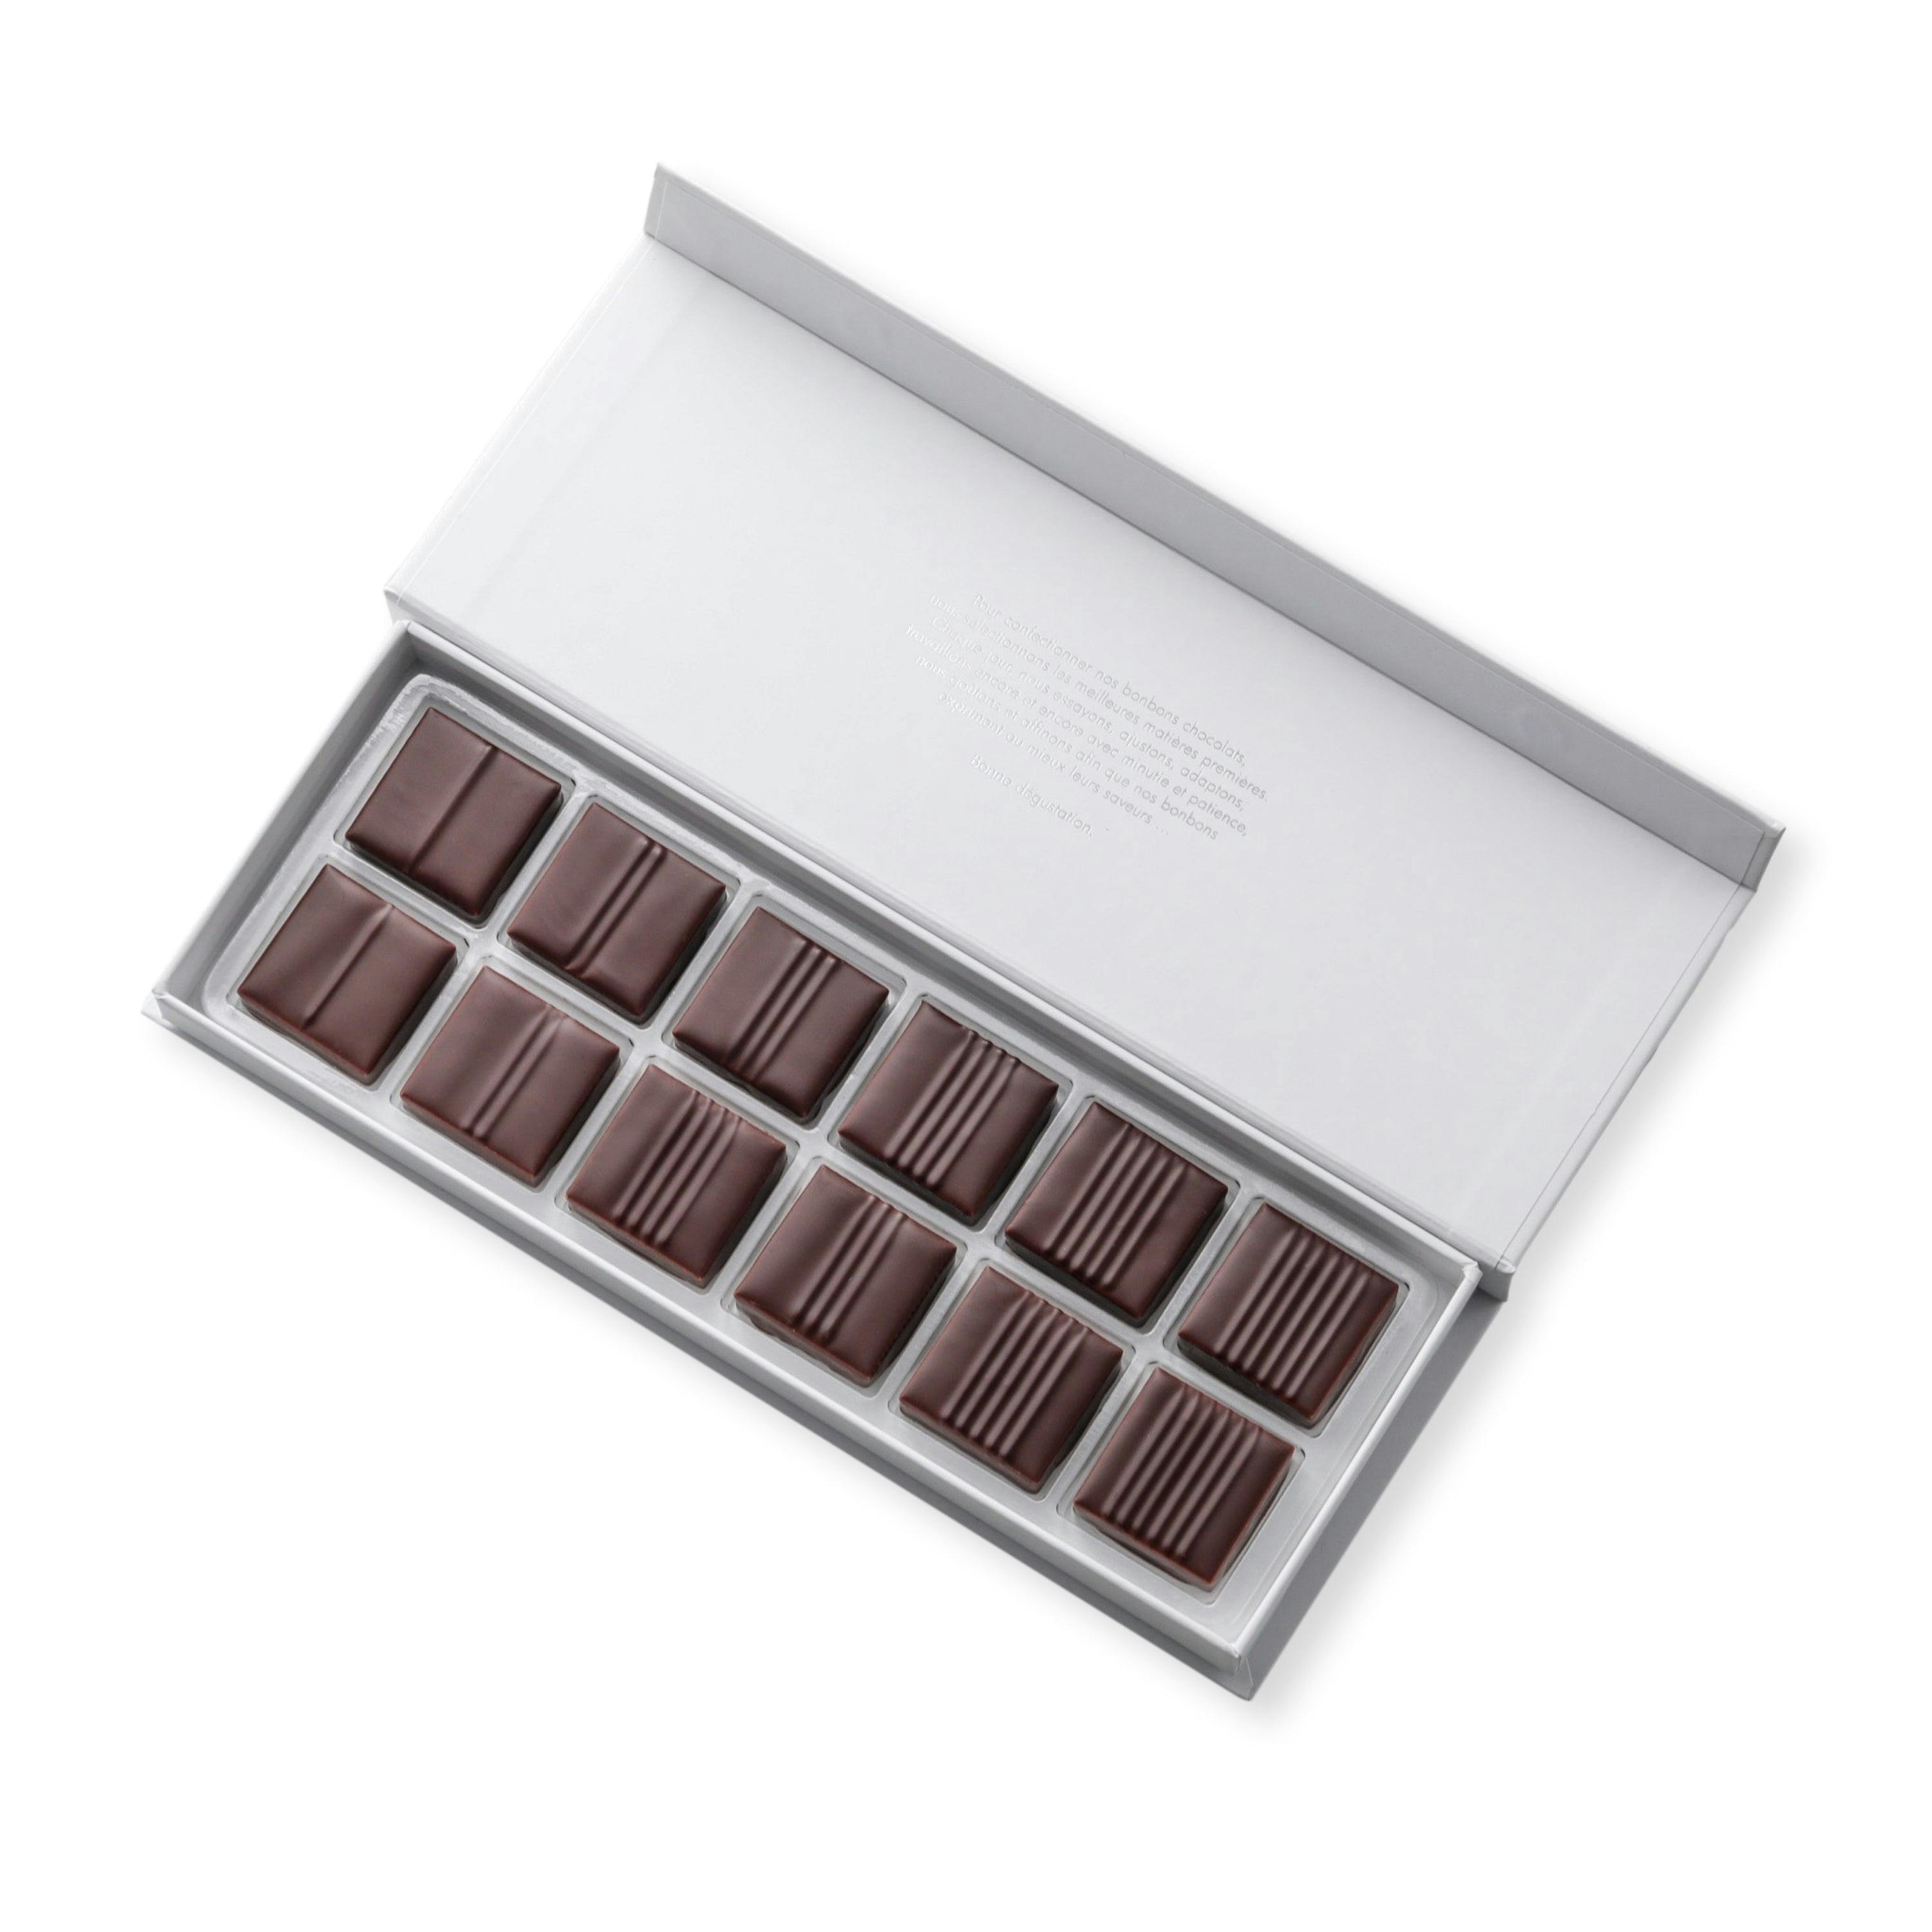 Coffret pralinés croustillants 12 chocolats - Vincent Vallée chocolatier champion du monde